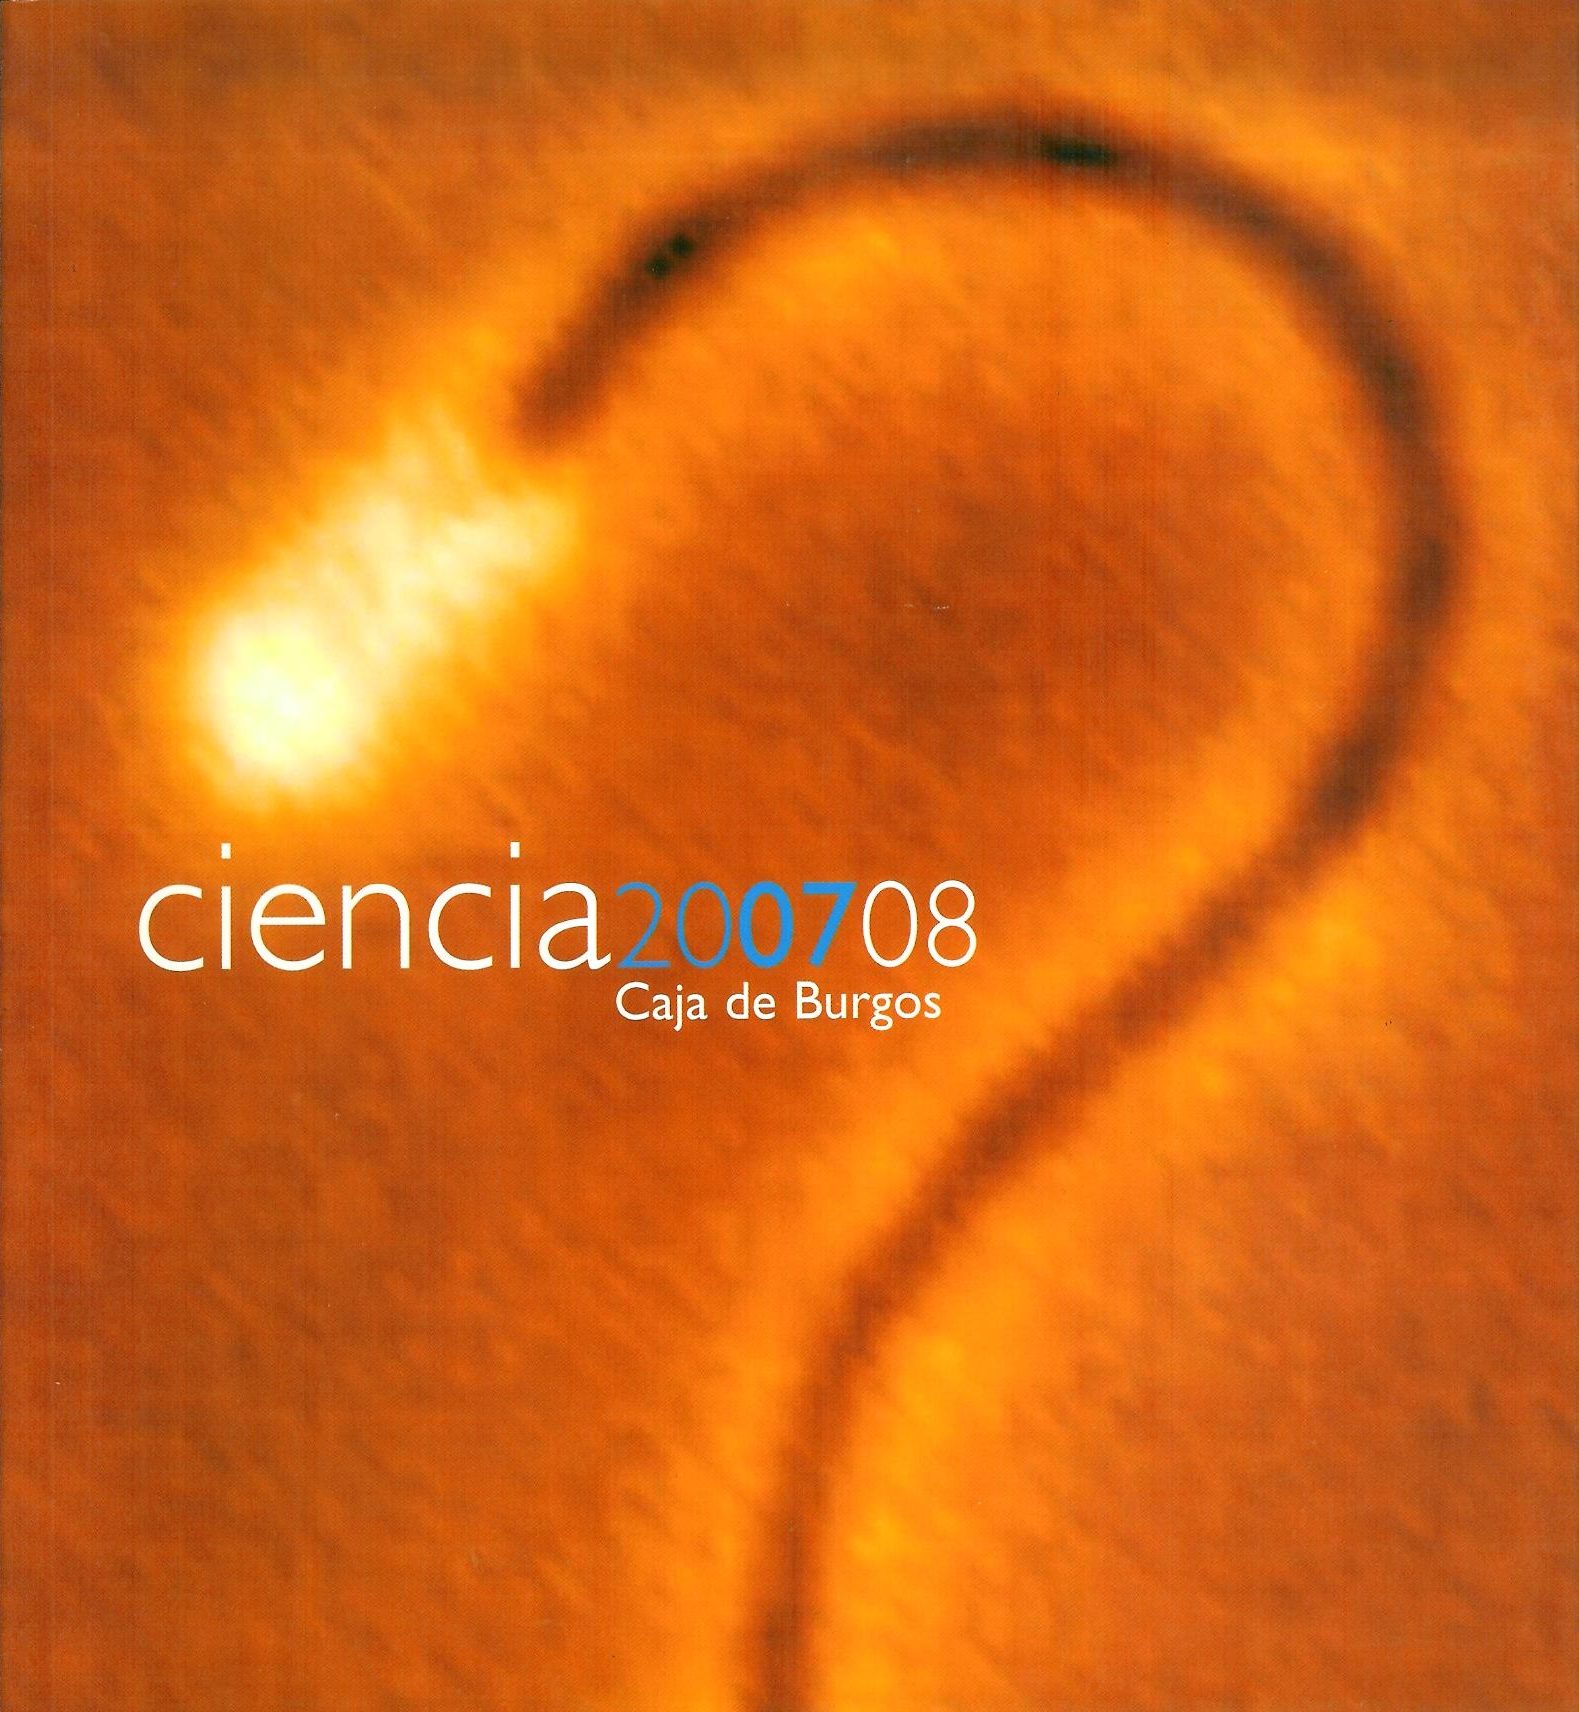 Ciencia 200708